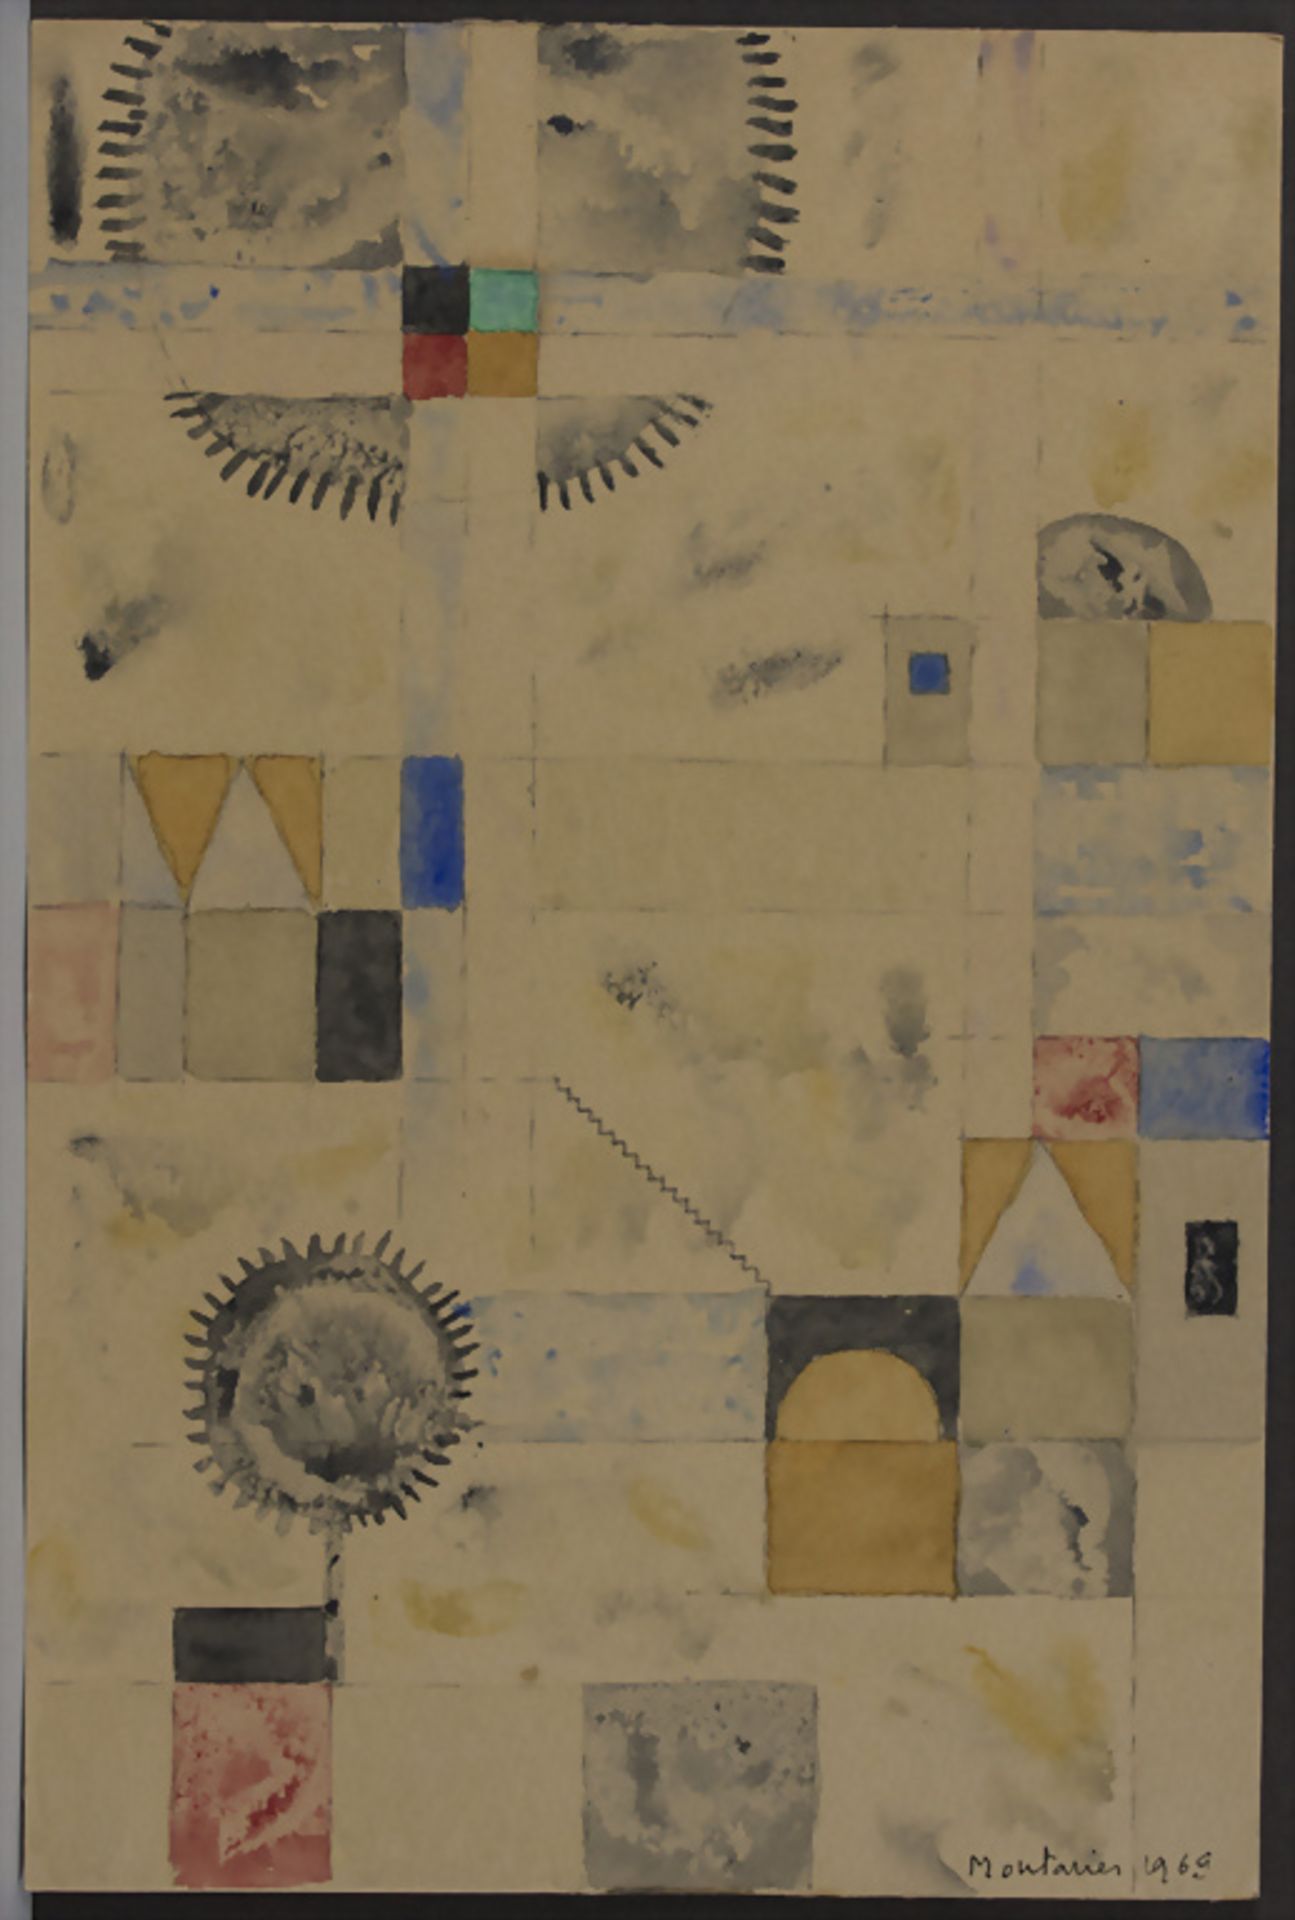 Hubert Montarier (1913-?), 'Abstrakte Komposition' / 'An abstract composition', 1969